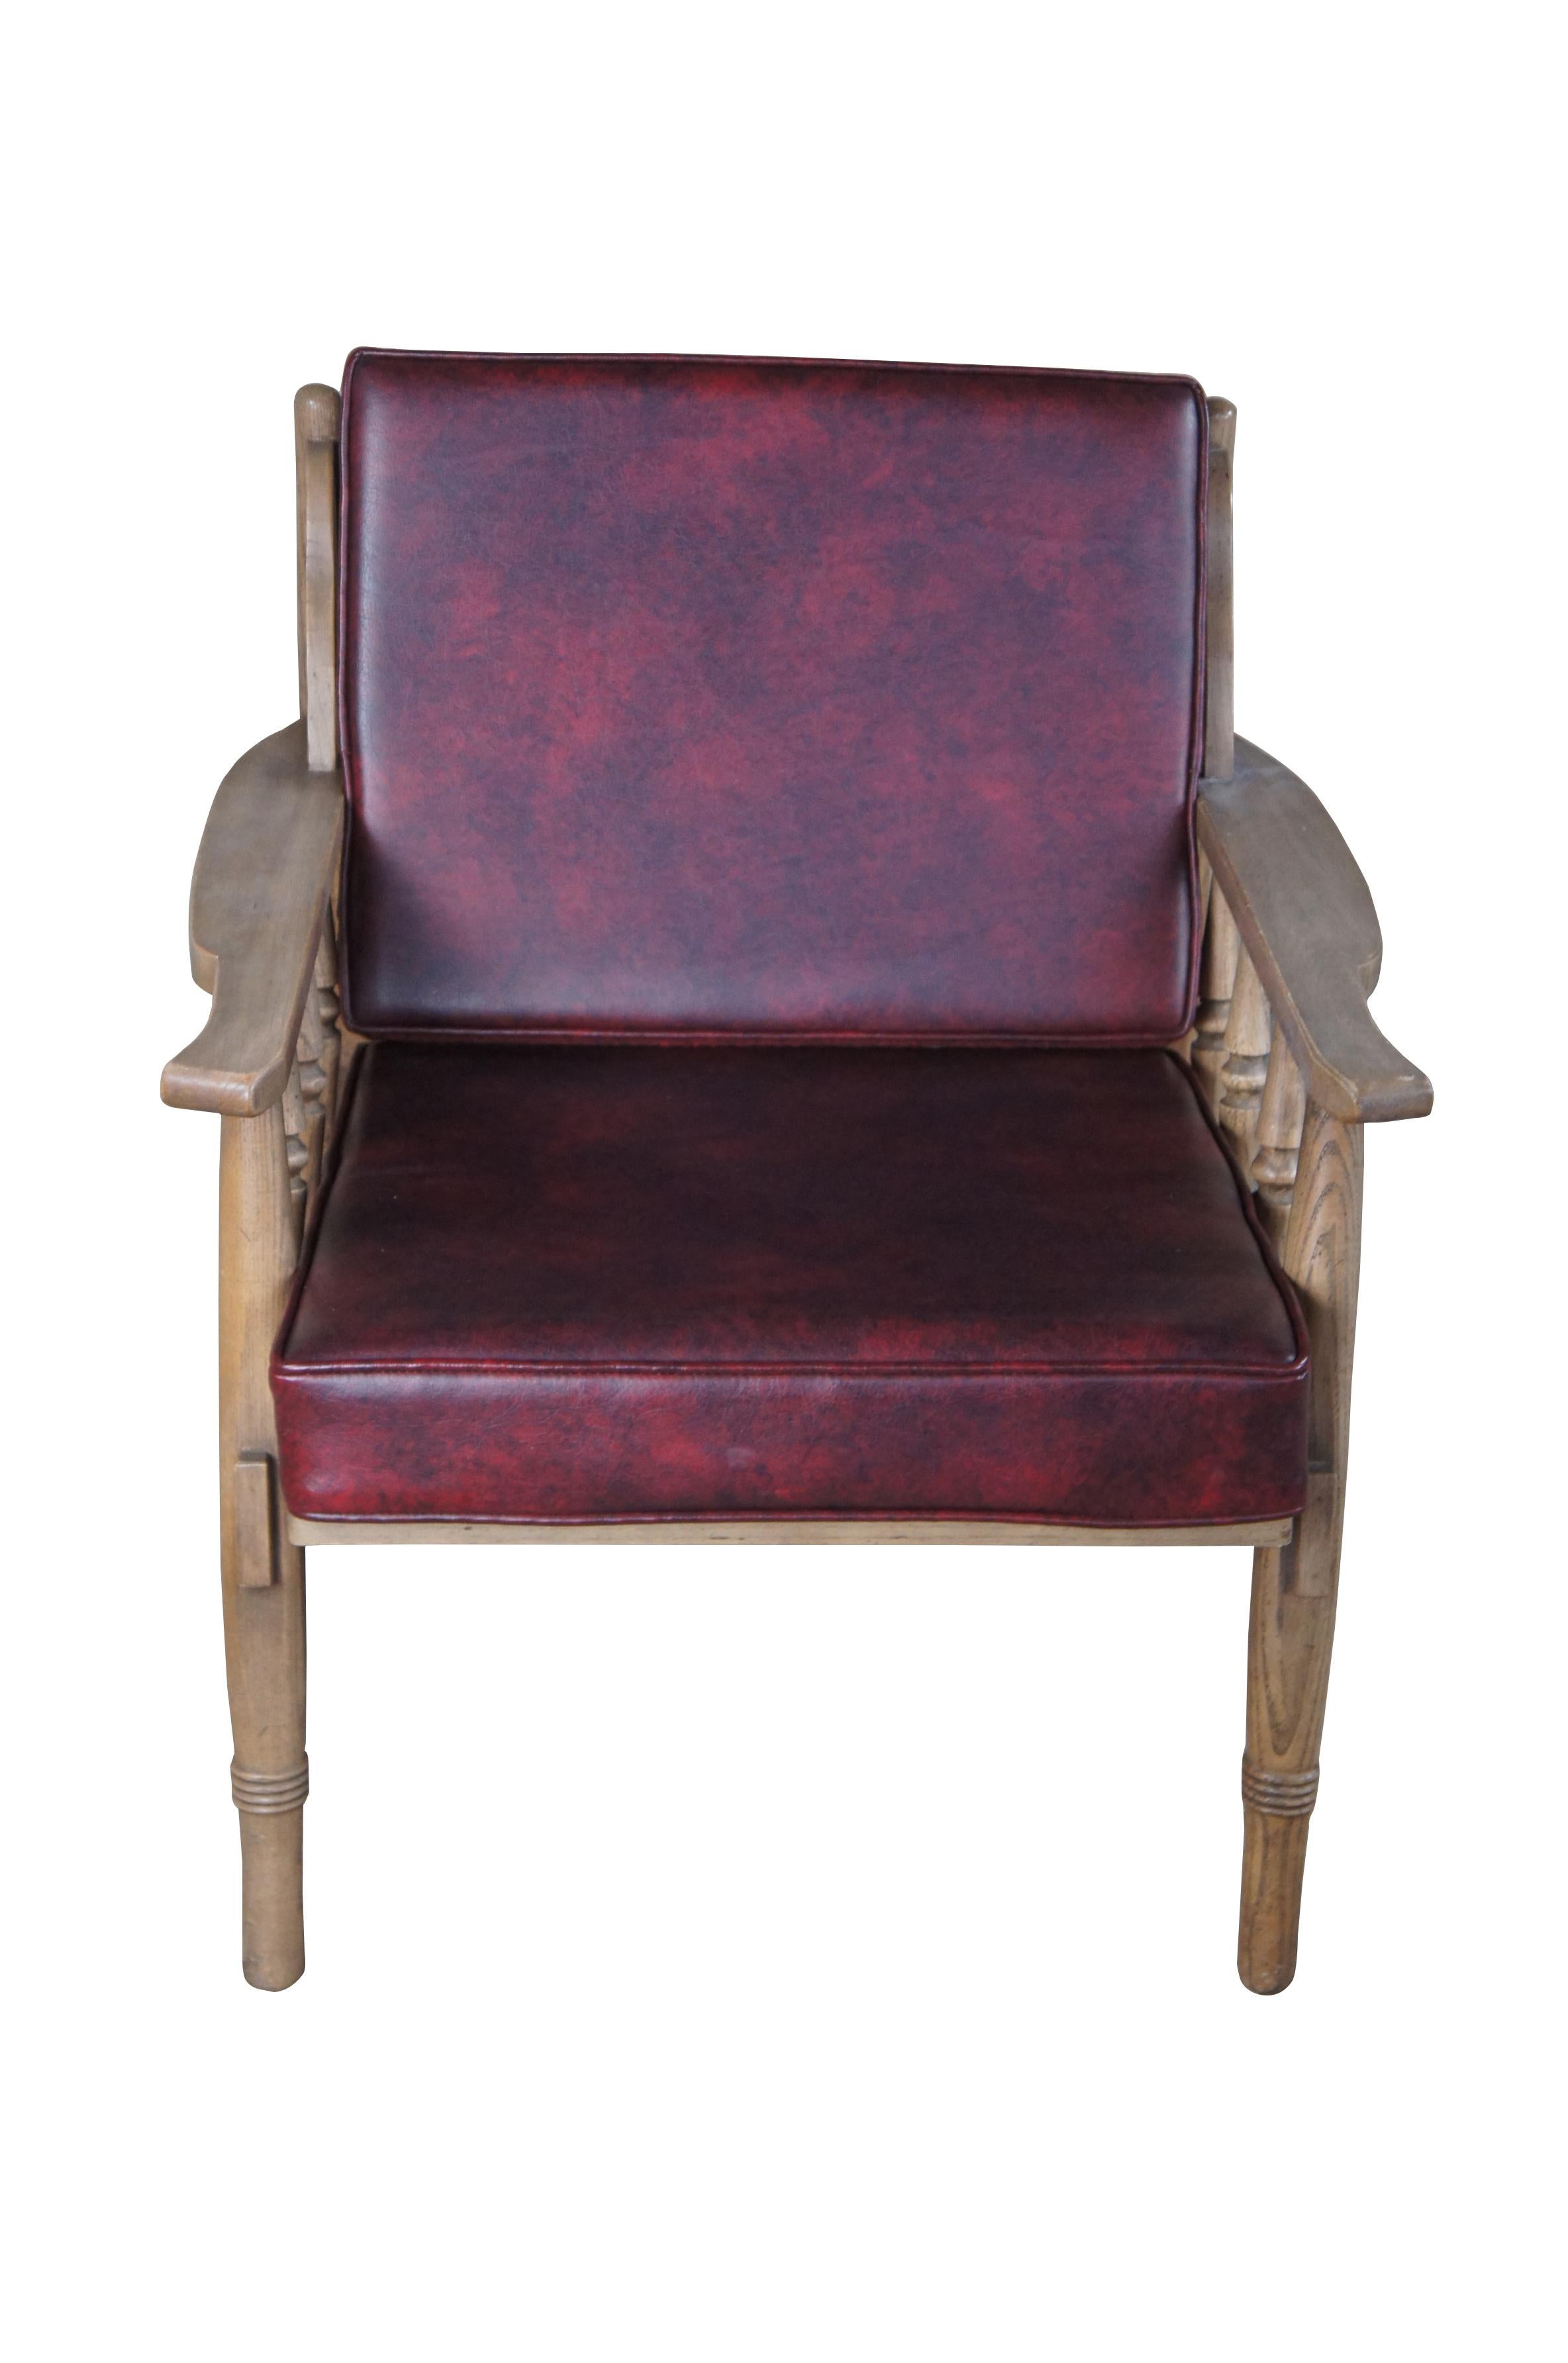 Mid-Century Modern Williams Furniture Corp Sessel. Aus Nussbaumholz, mit gedrechselten Lattenarmen und roten Vinylpolstern.

Williams Furniture Corp, ein in der sechsten Generation von der Familie Jacob Baart aus Grand Rapids, Michigan,